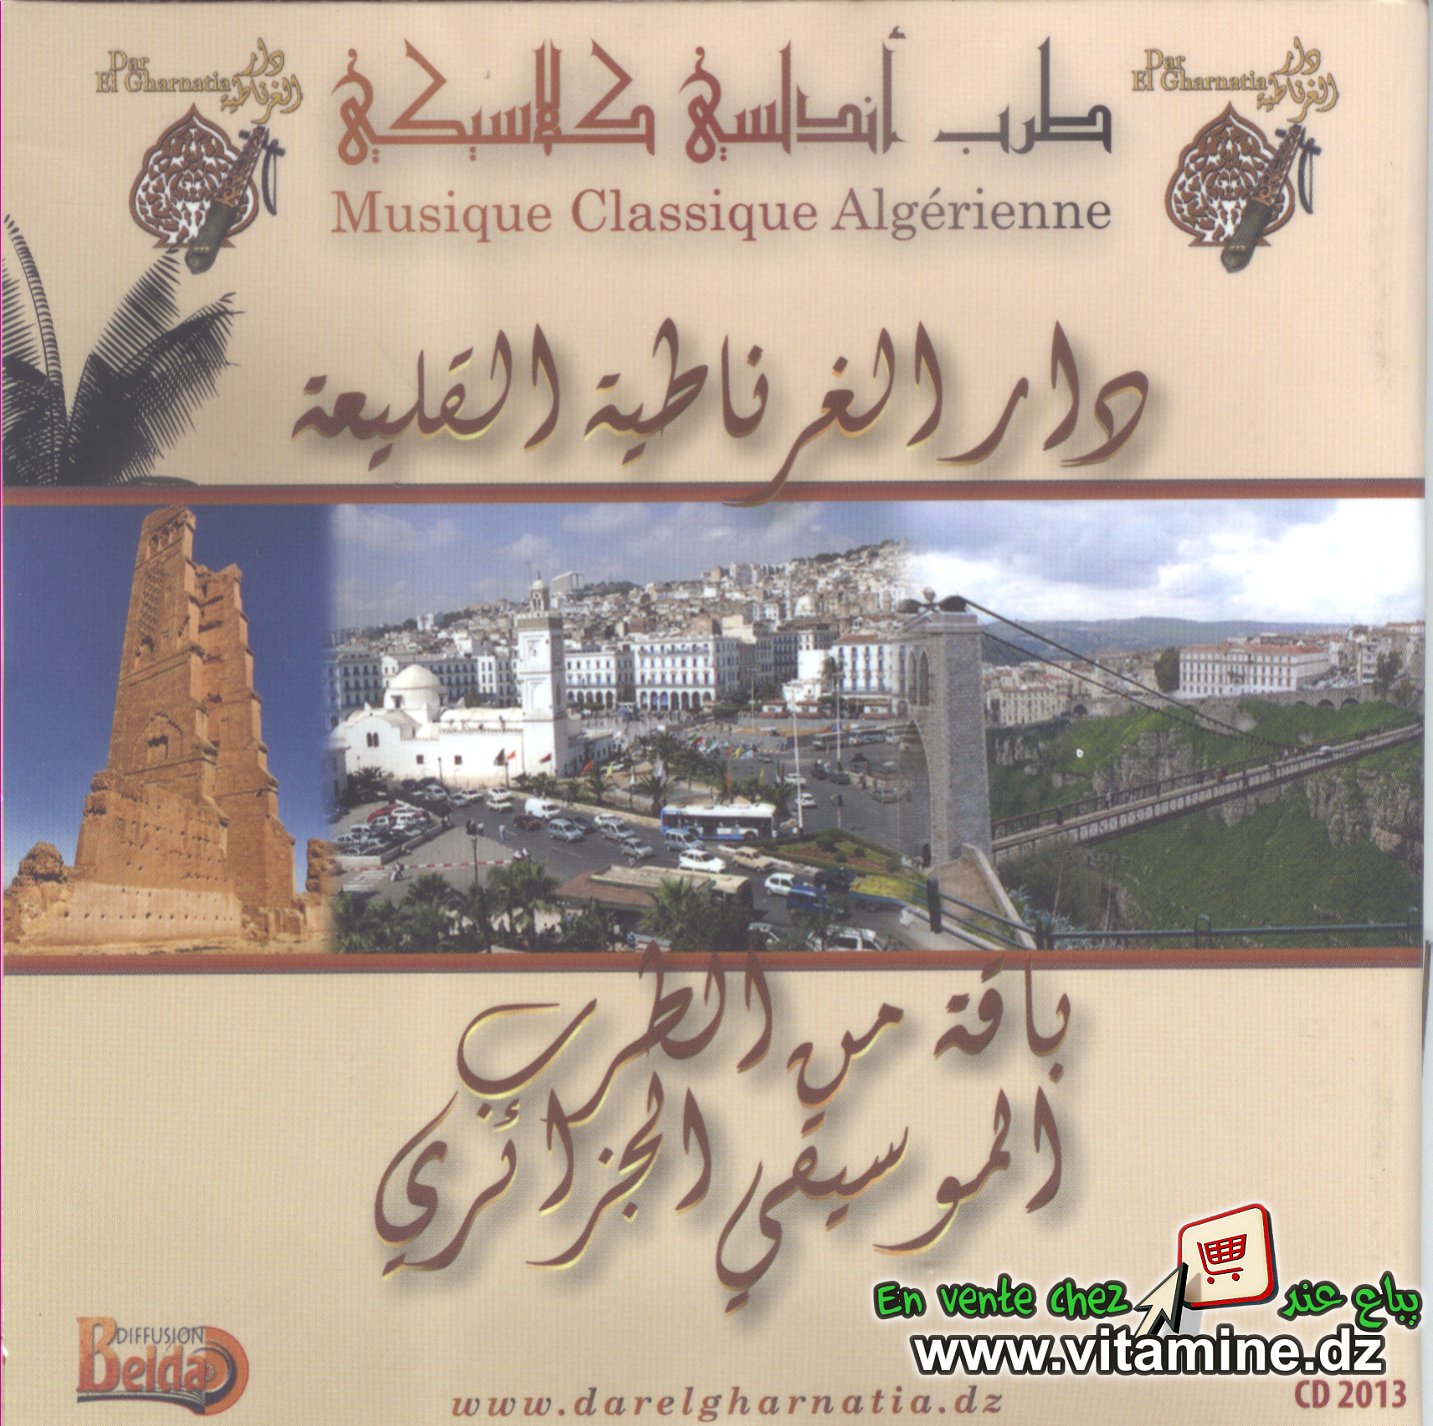 dar gharnatia elkliâa - compilation de la musique algérienne 